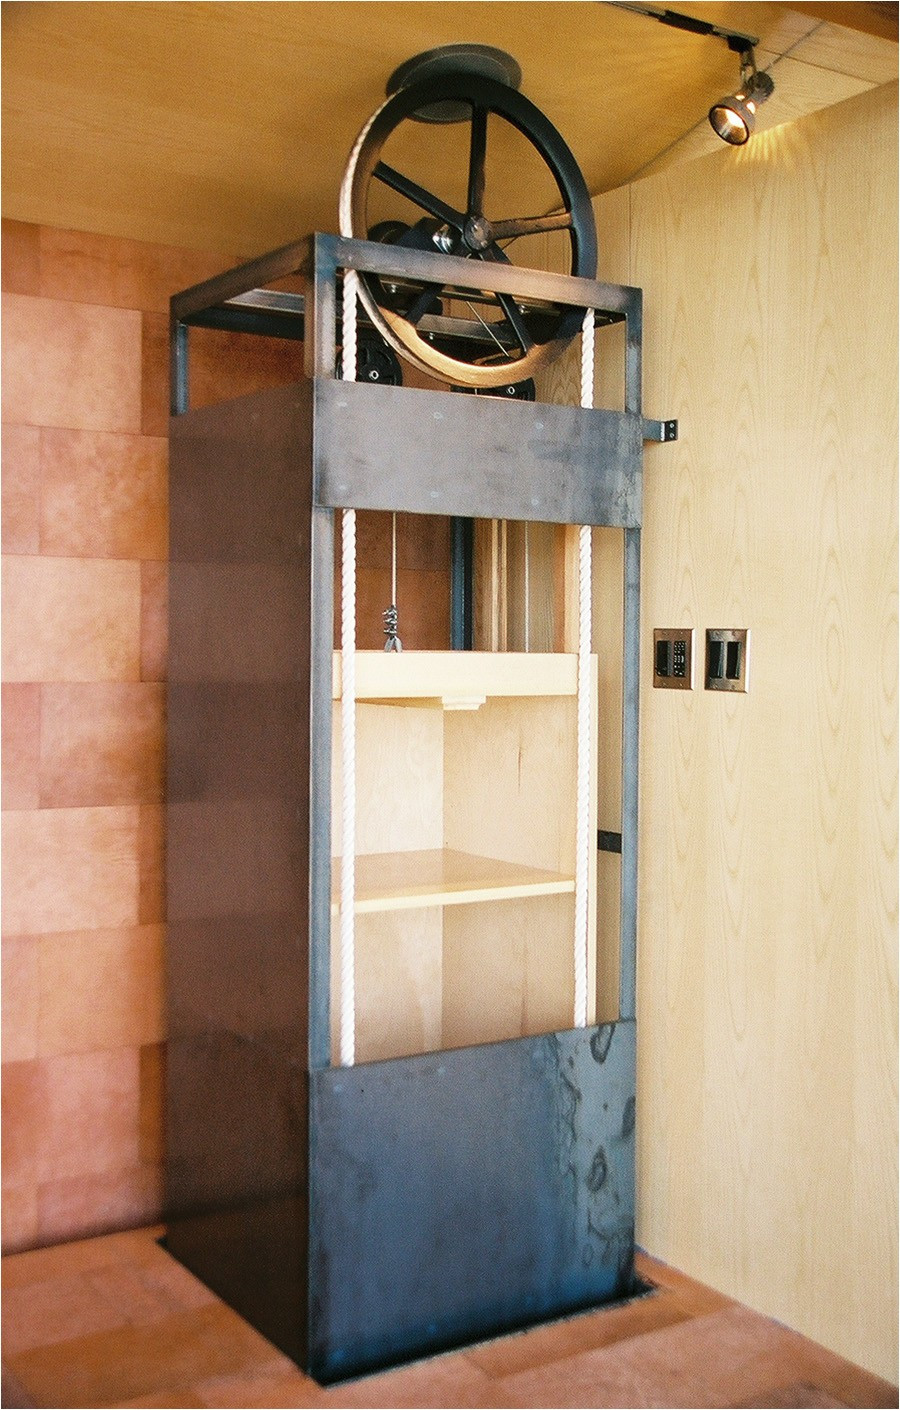 DIY Home Elevator Plans
 Diy Home Elevator Plans